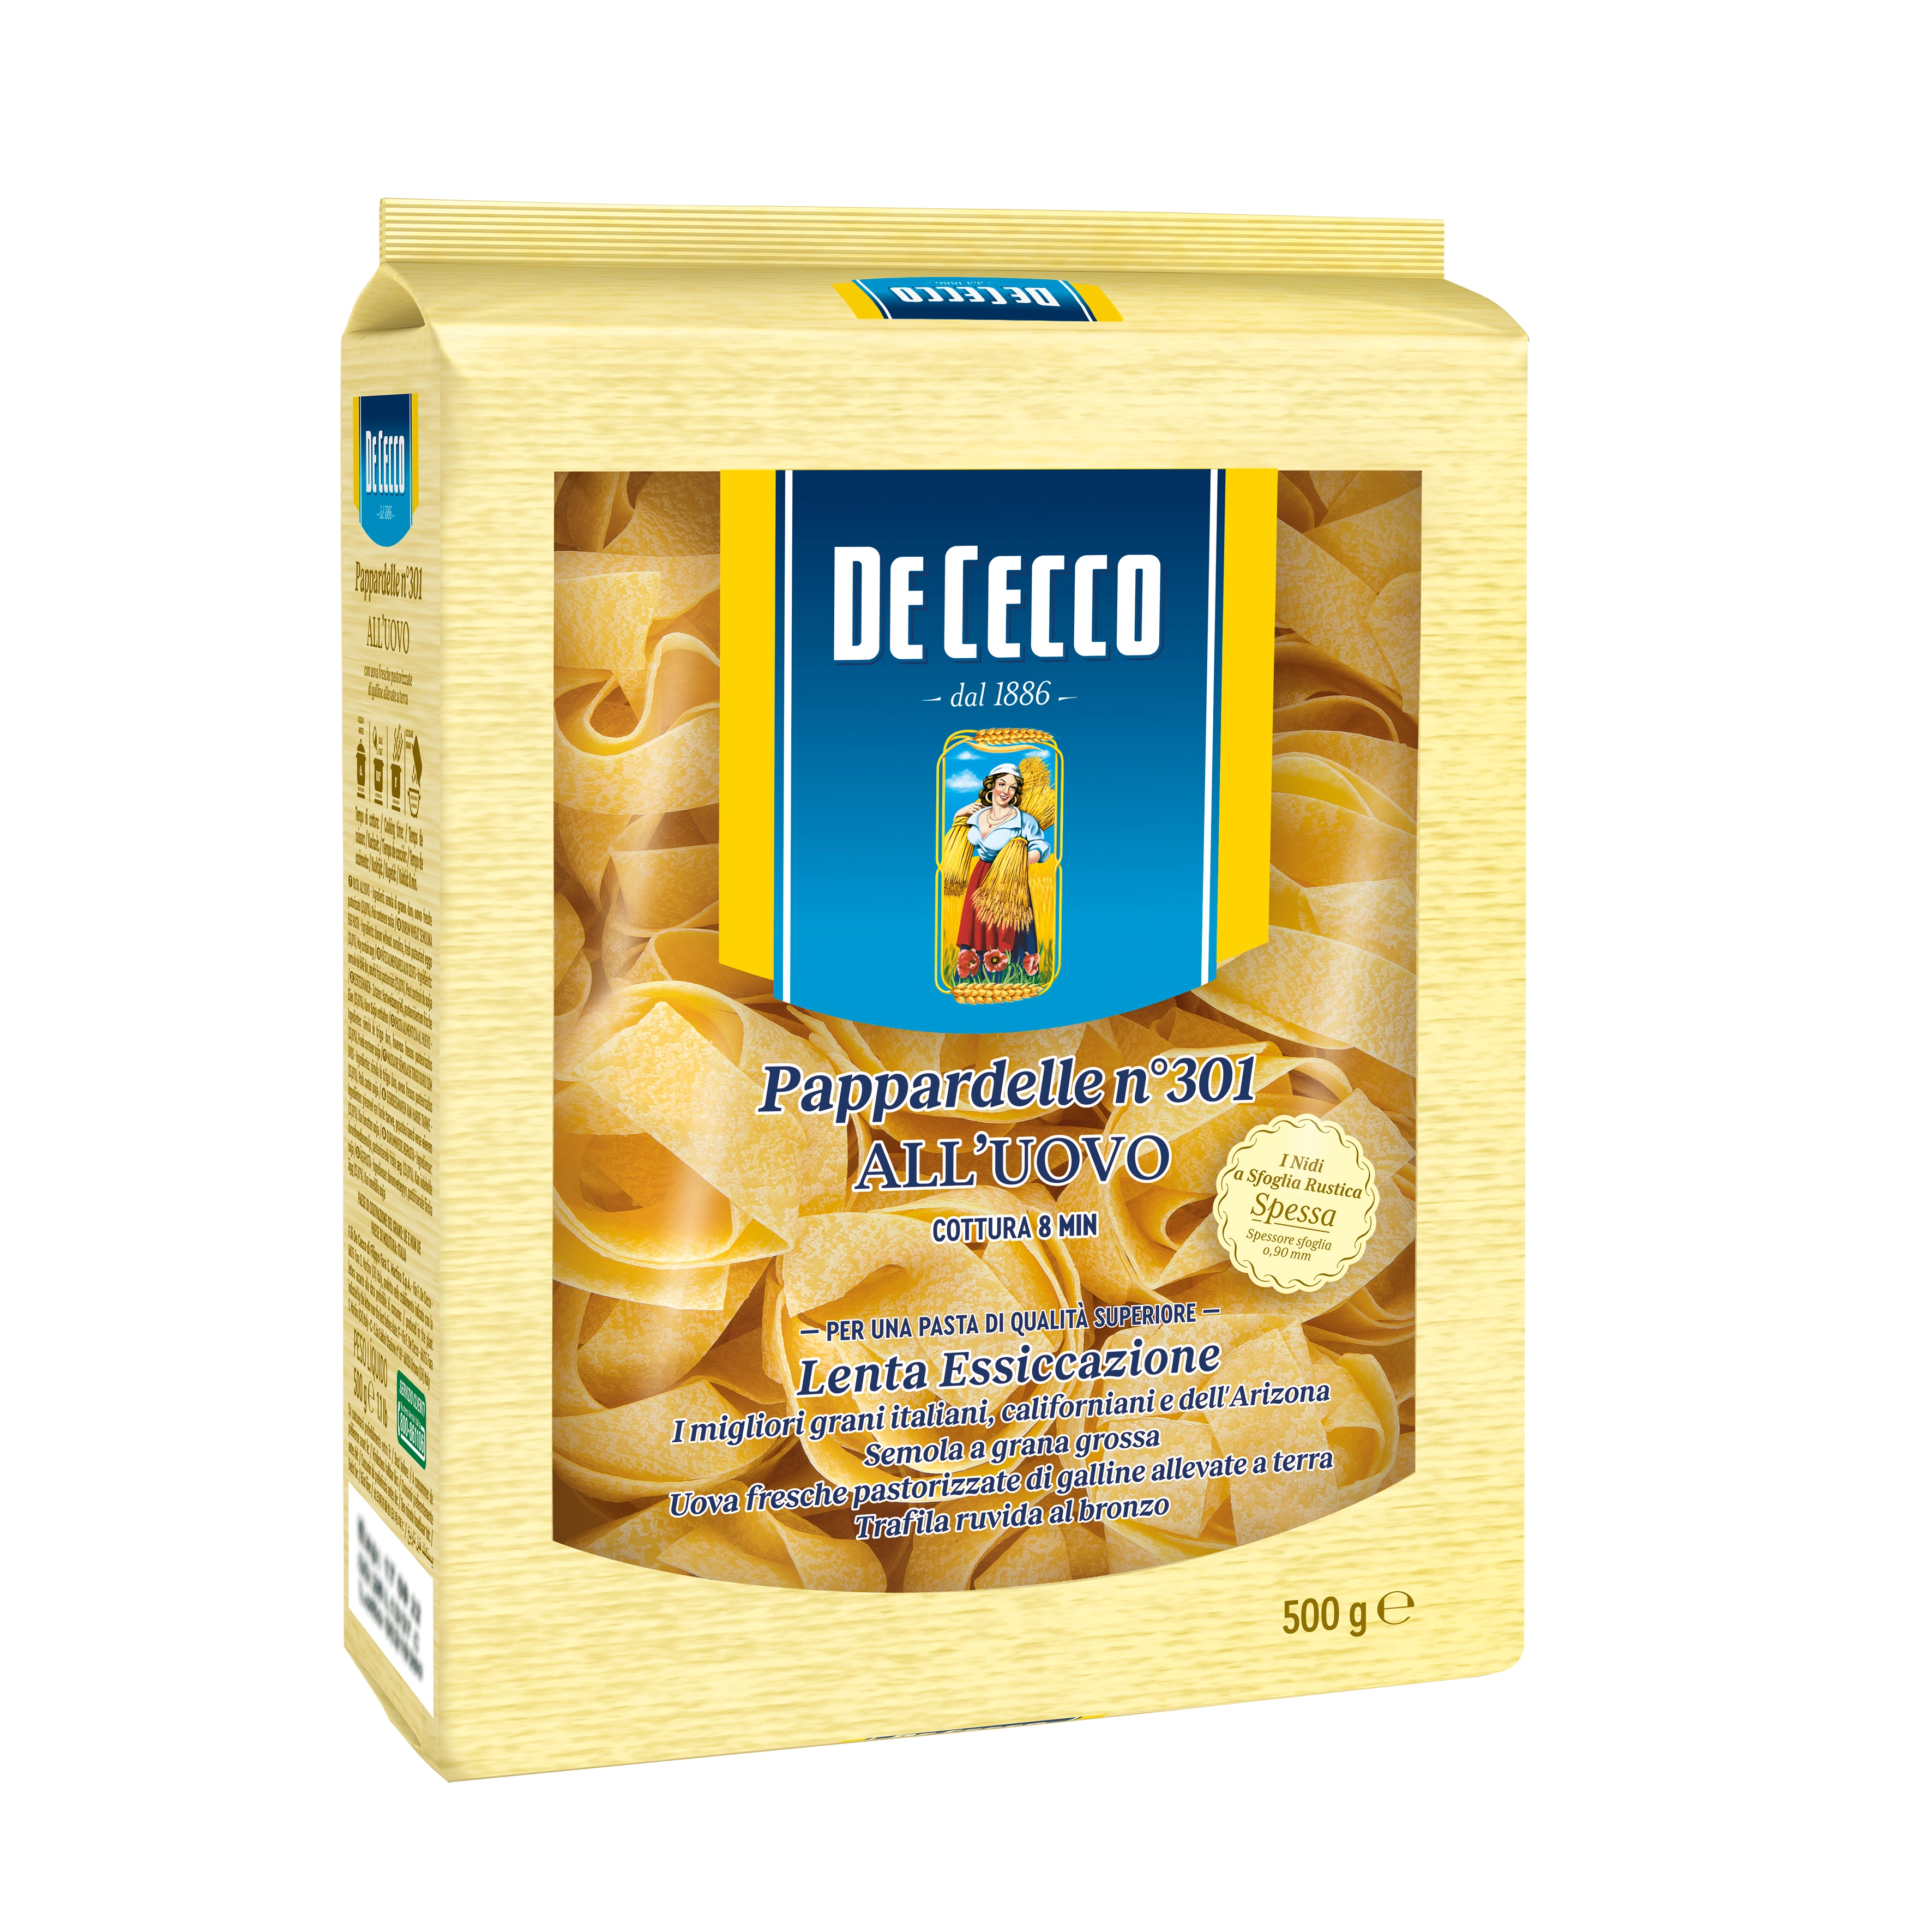 De Cecco Pappardelle Egg pasta (UOVO) N301 500g